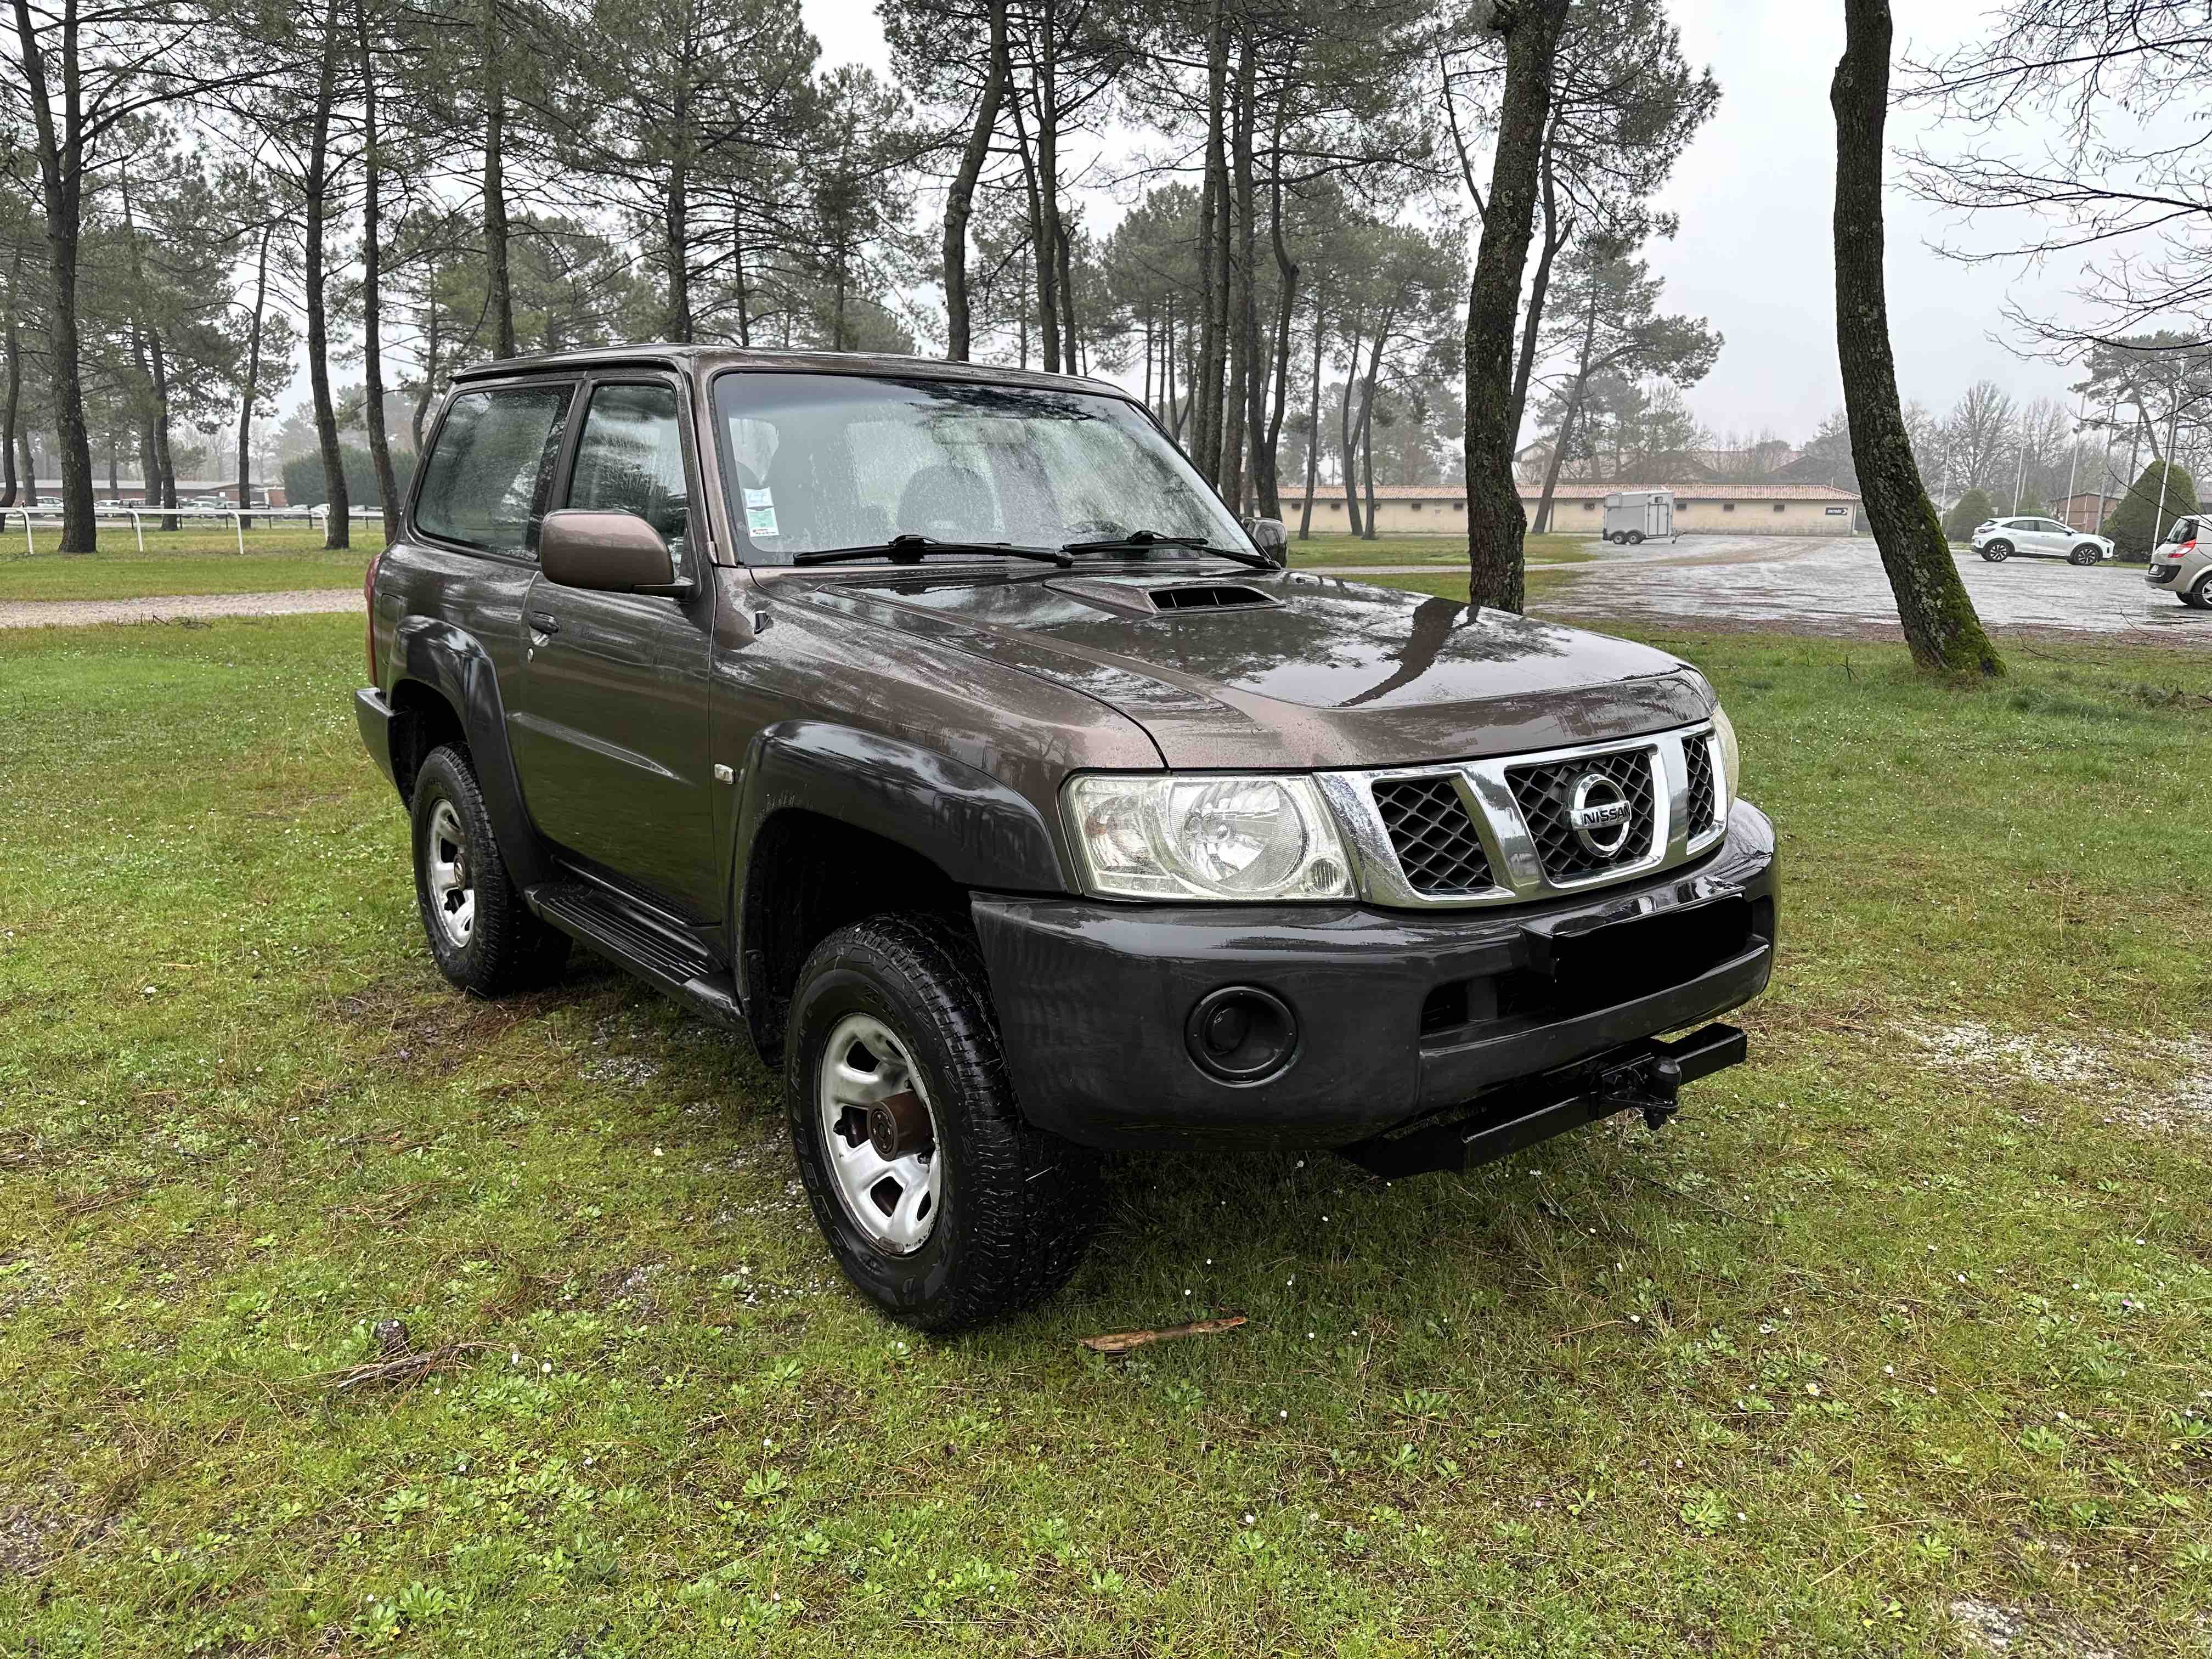 À vendre 4x4 Patrol Nissan diesel 3.0 de 2005 entretenu et peu de km